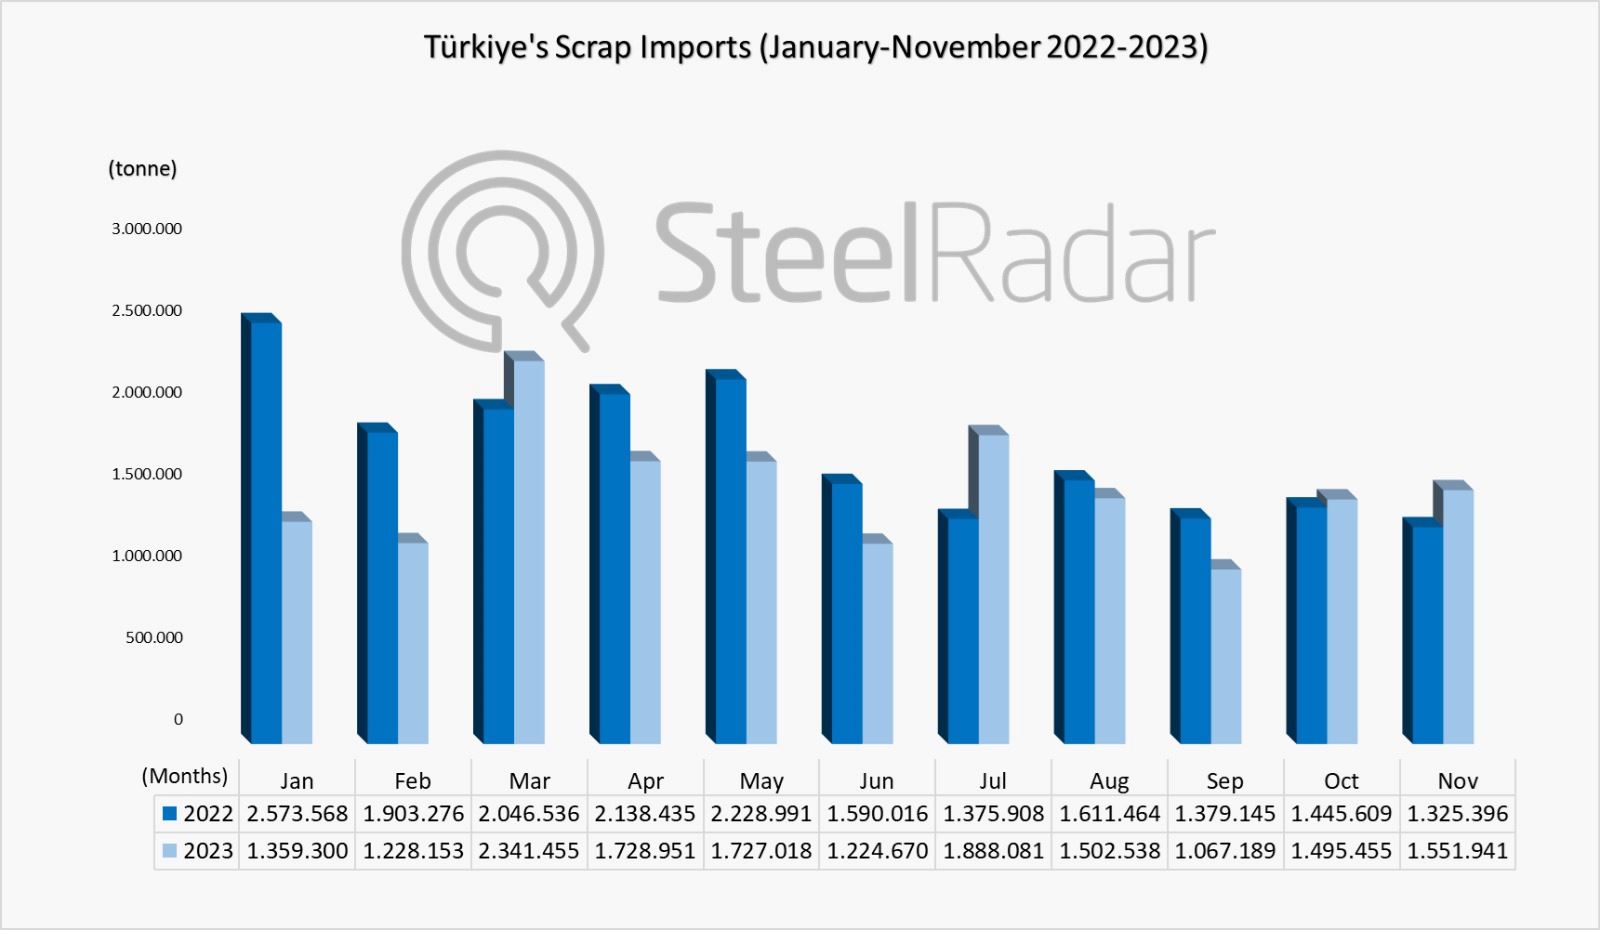 Türkiye's scrap imports decreased by 12.77% in 11 months